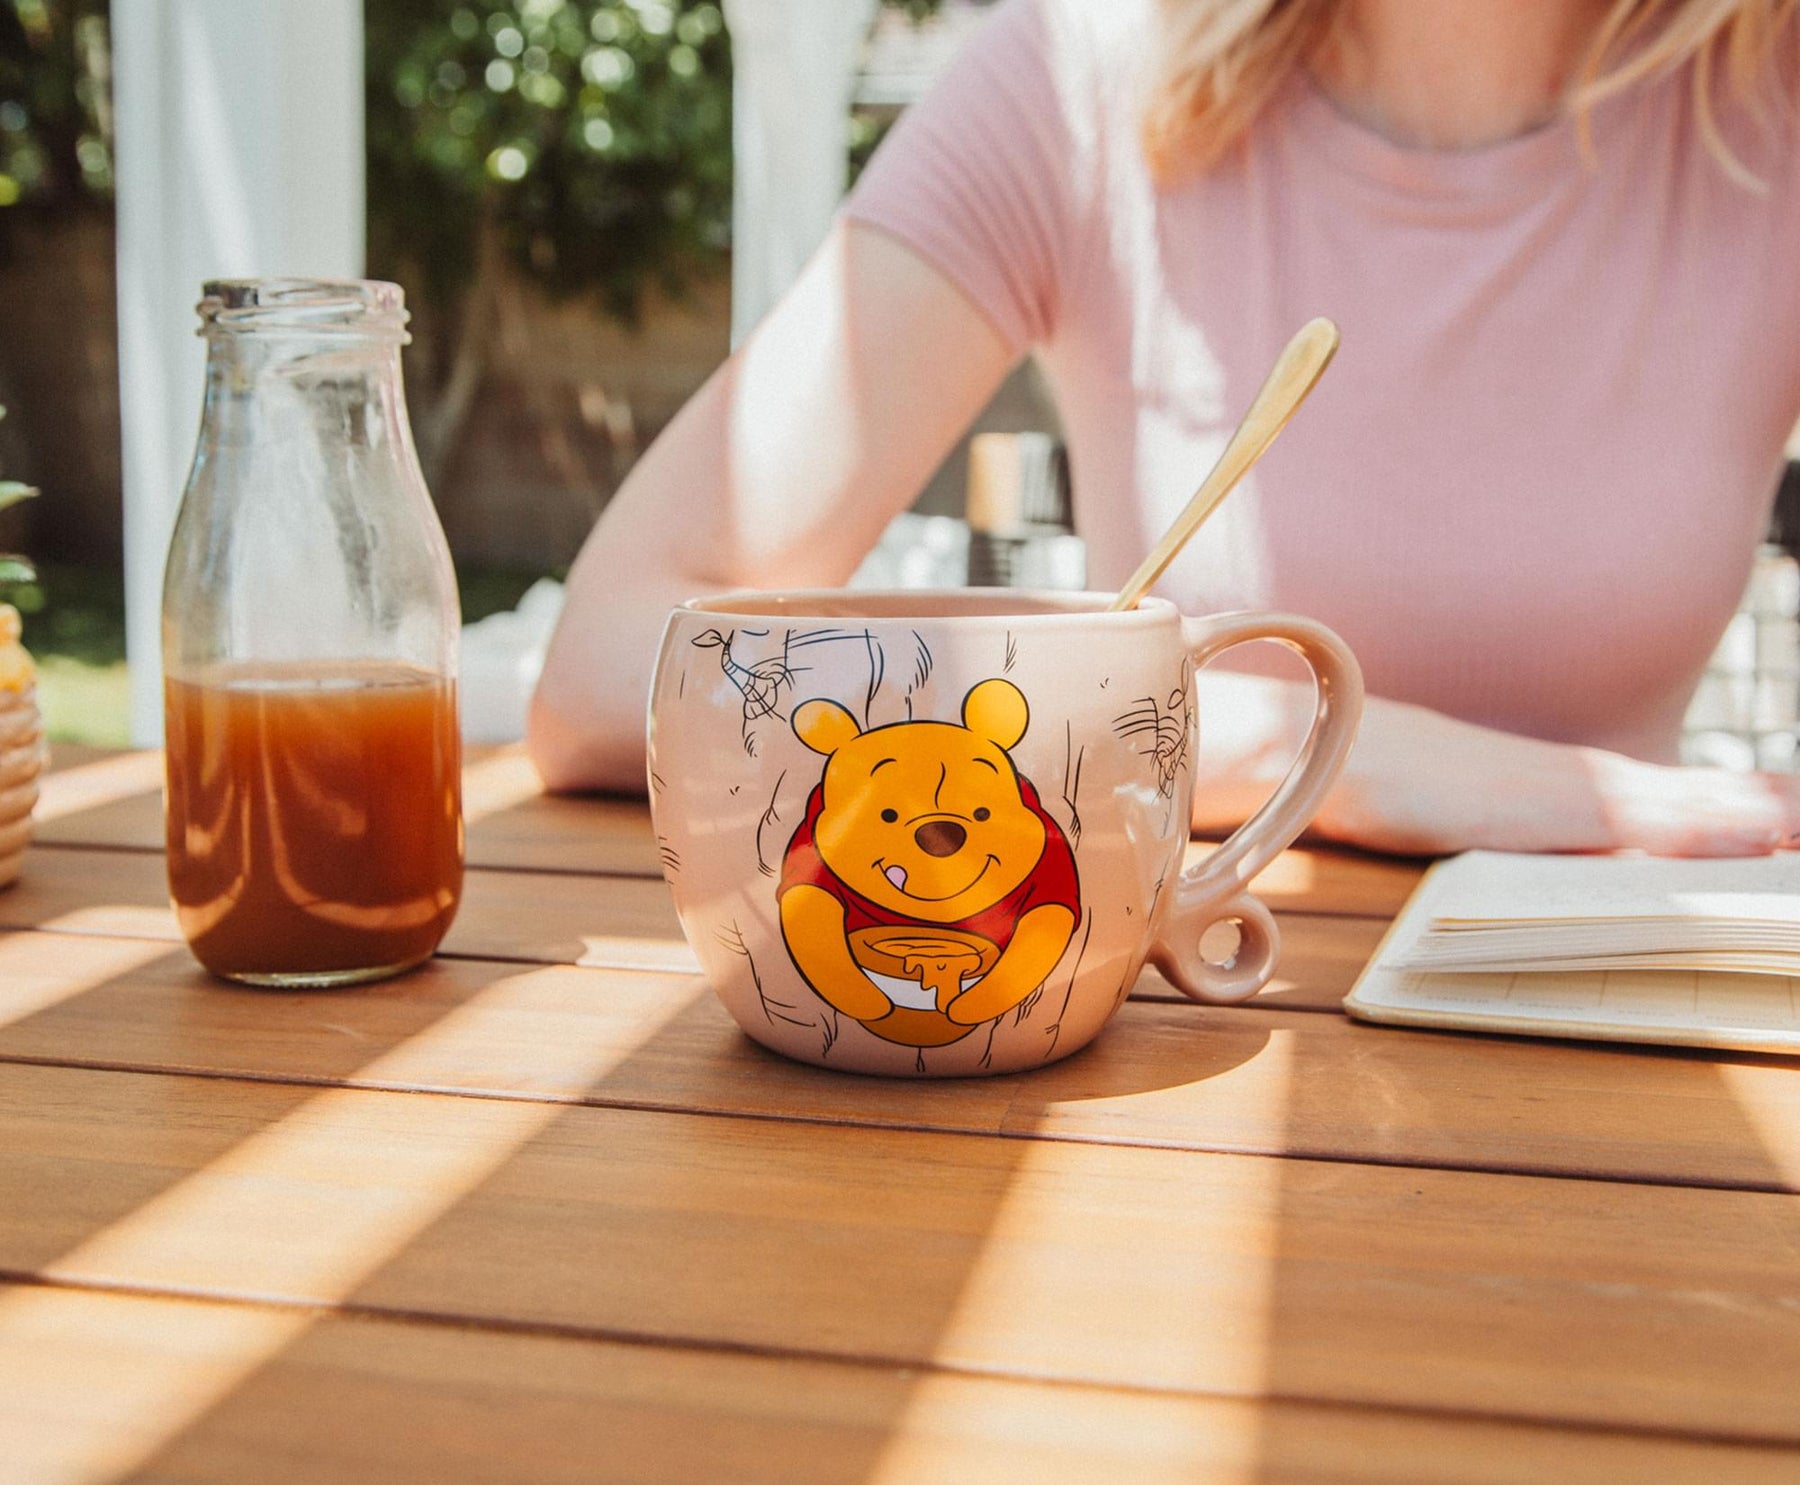 Disney Winnie The Pooh Stuck in Tree Ceramic Coffee Cup with Loop